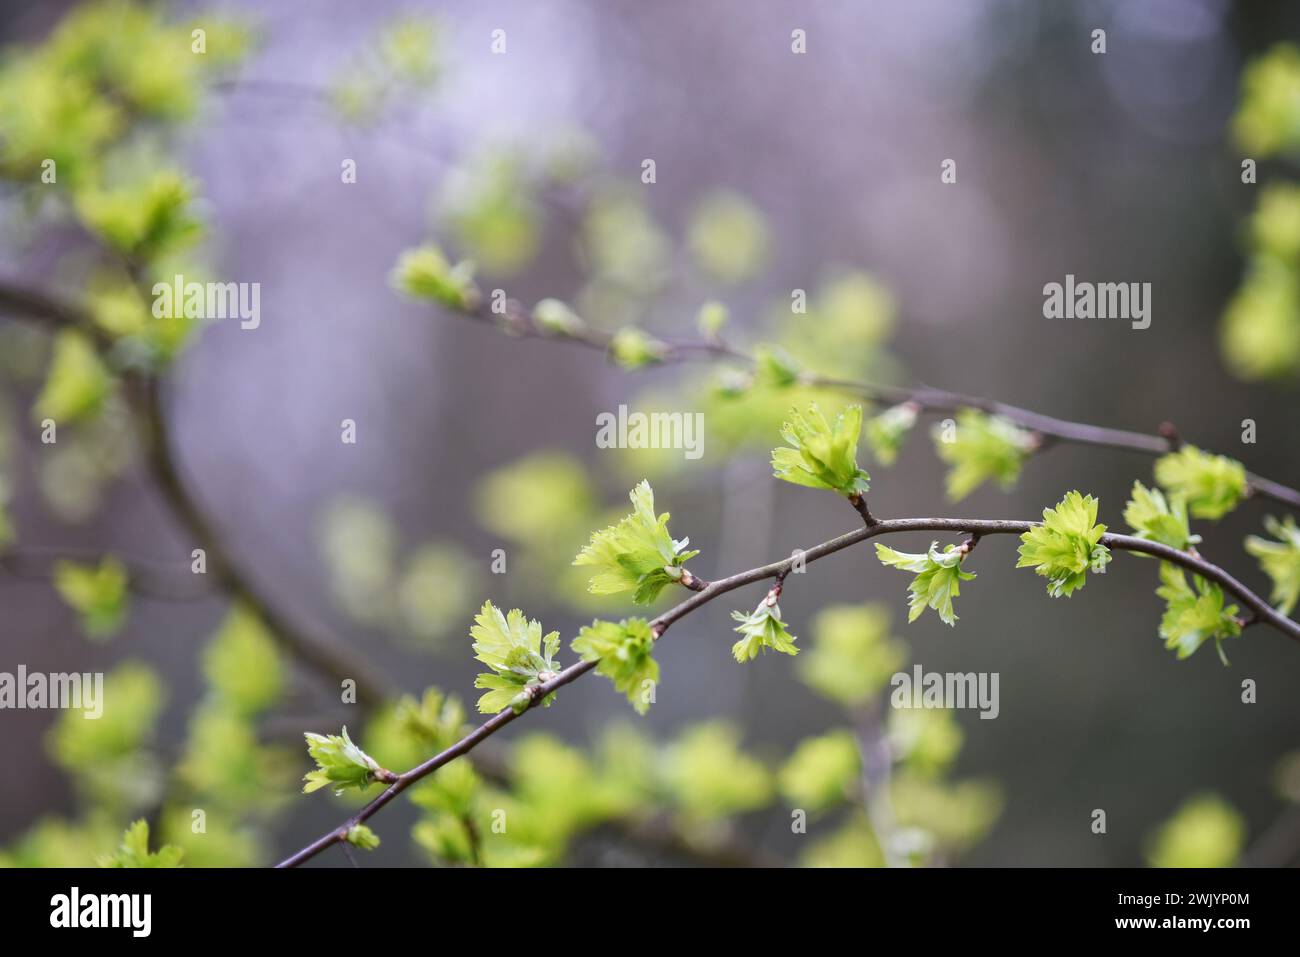 Neue Blätter auf einem Busch, fotografiert im Frühjahr auf einem unscharfen natürlichen Hintergrund, ein Symbol für ein neues Leben oder einen neuen Anfang. Stockfoto